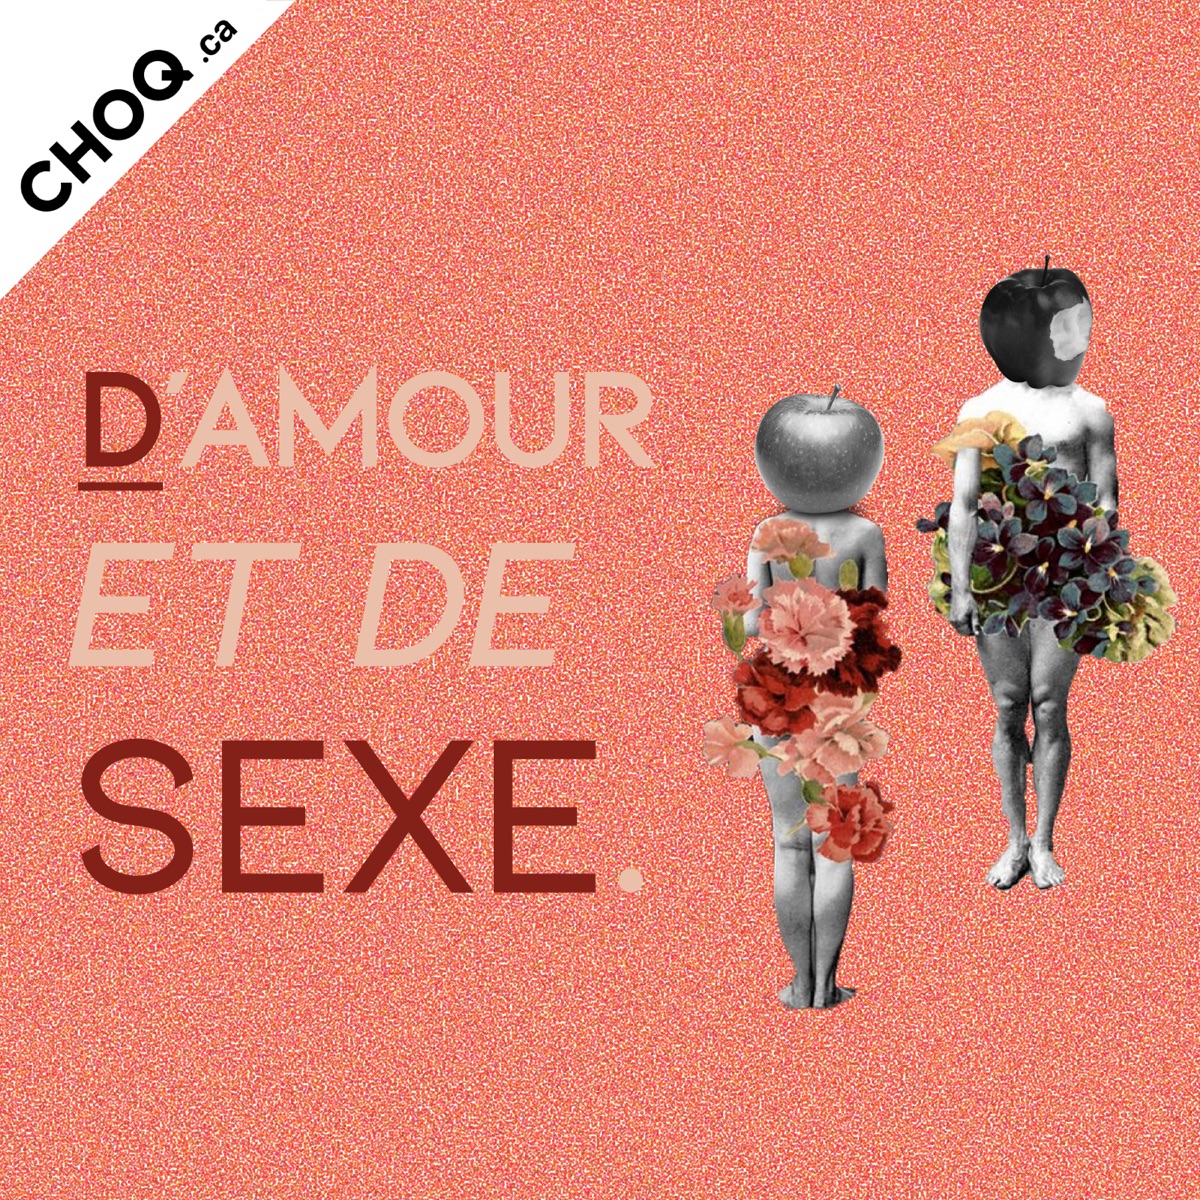 Damour et de sexe – Podcast image pic